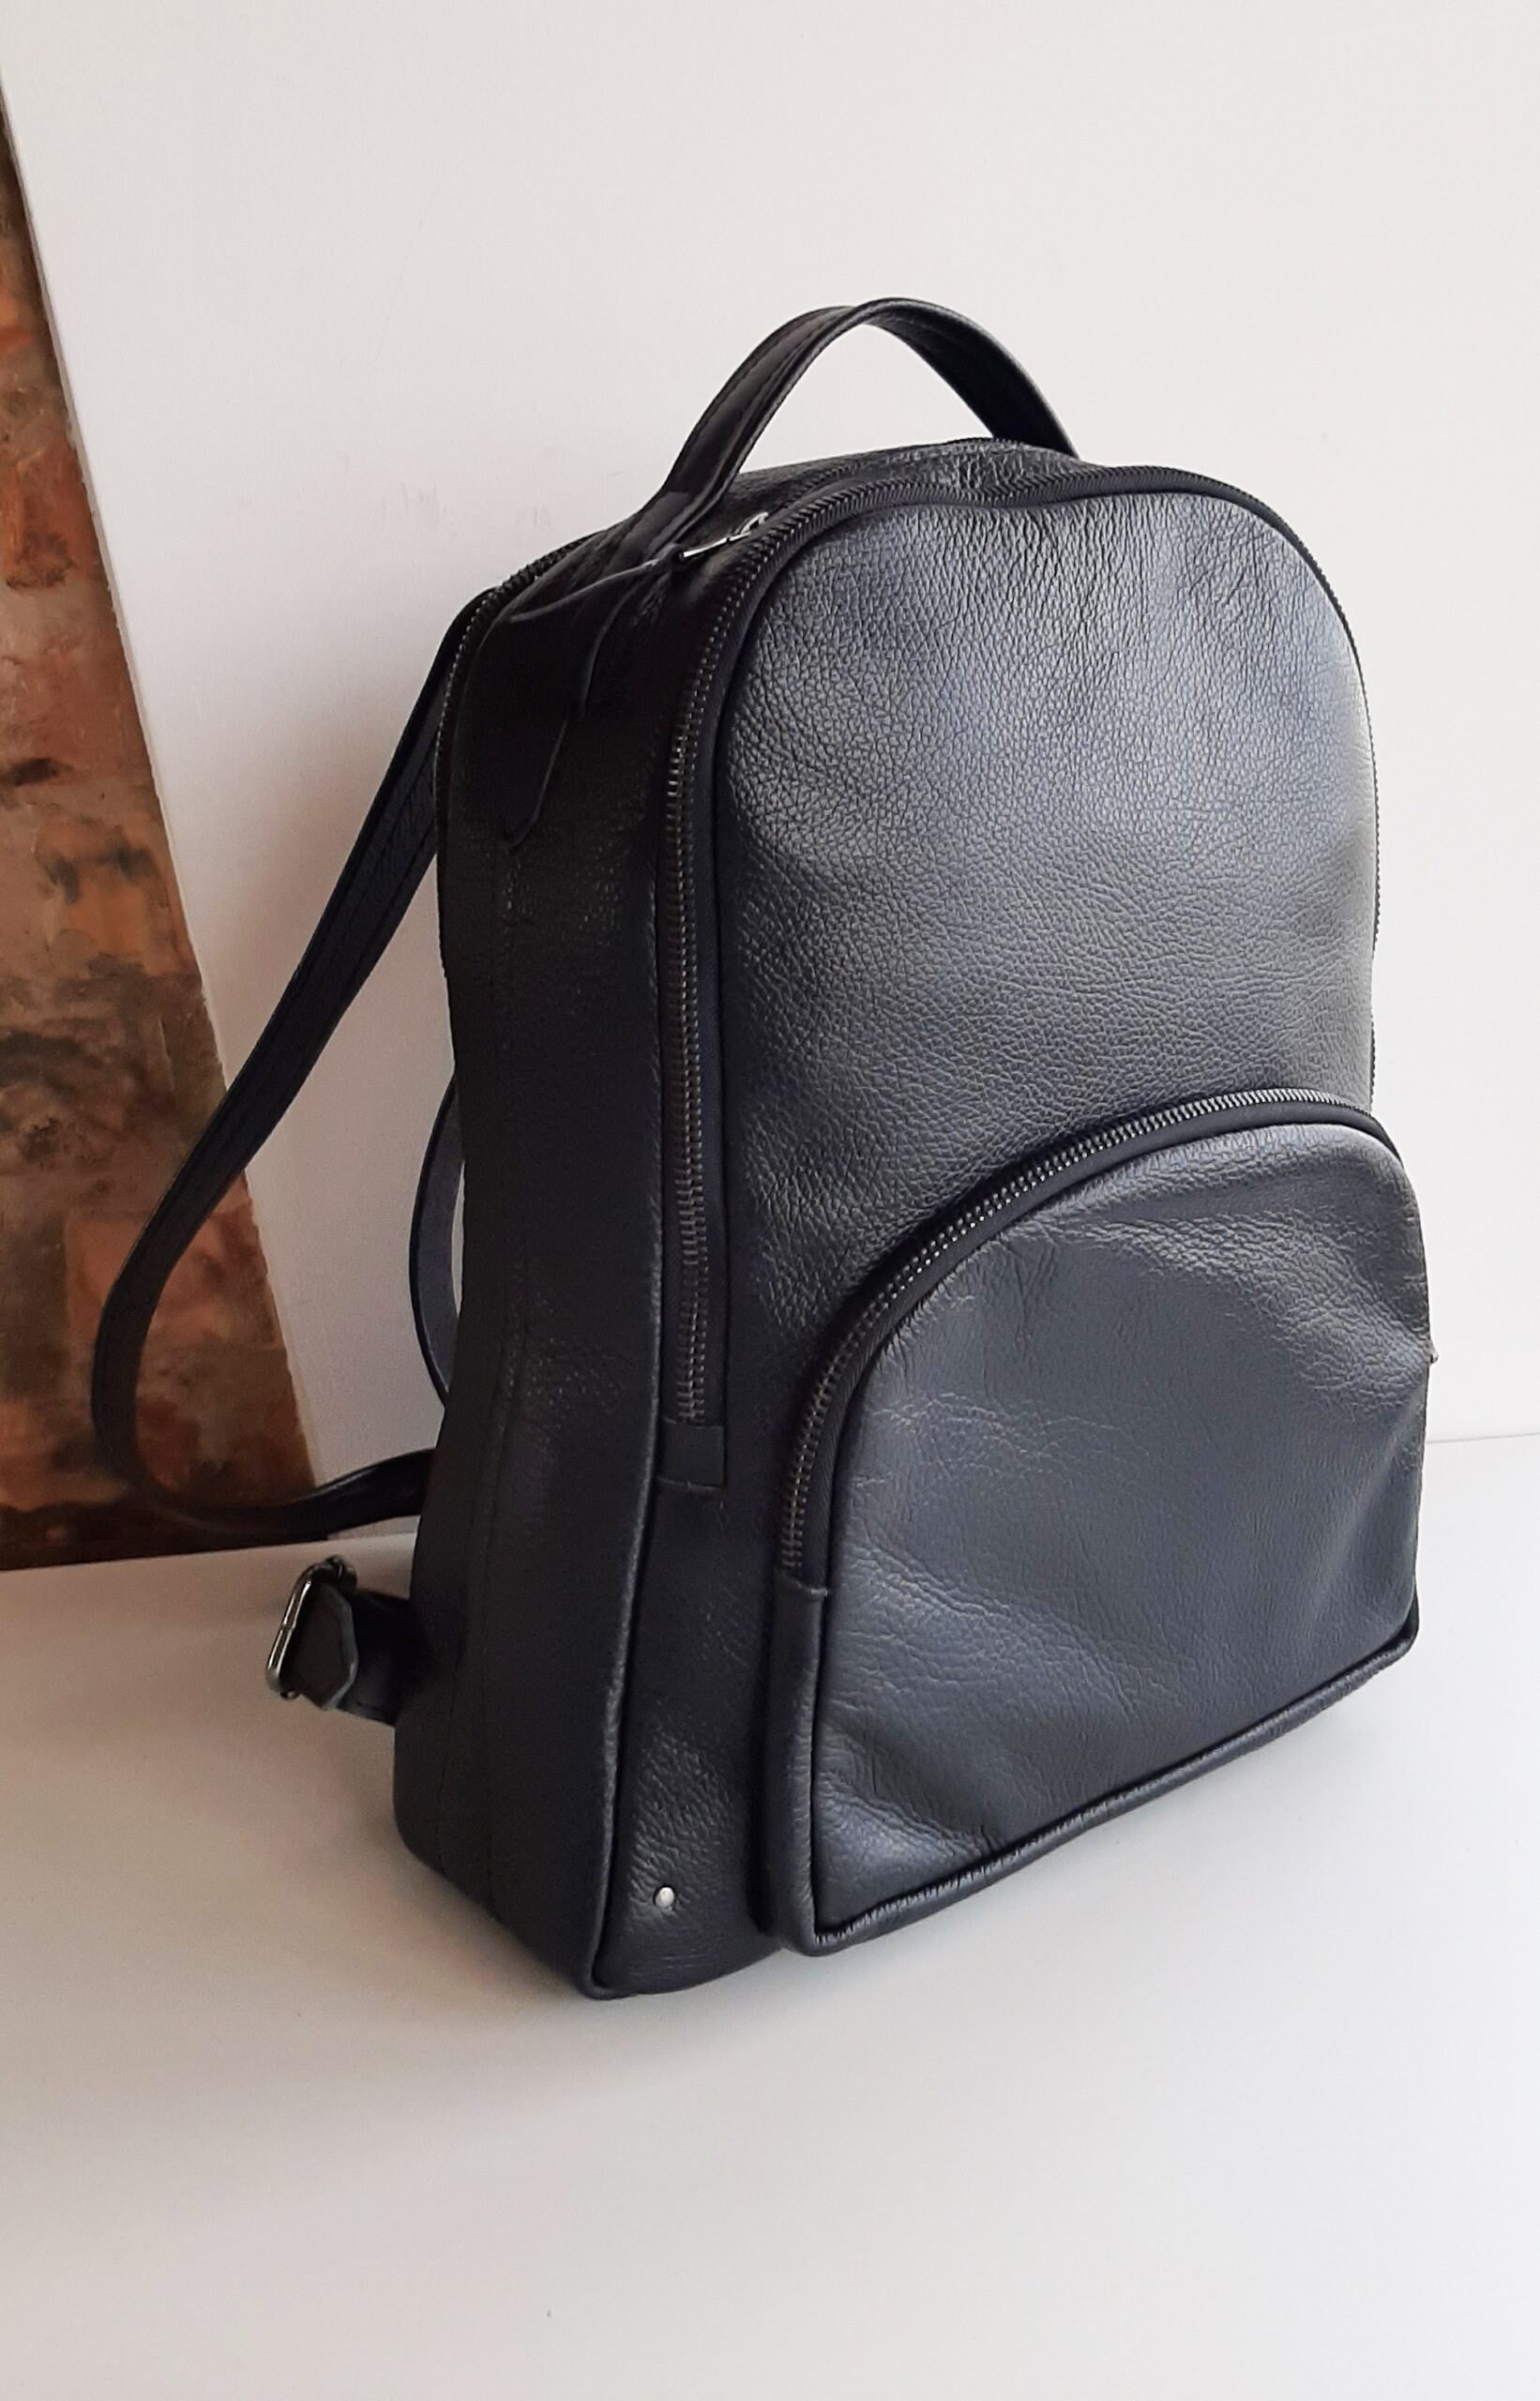 Stylish Black Genuine Leather Backpack Laptop Backpack | Etsy